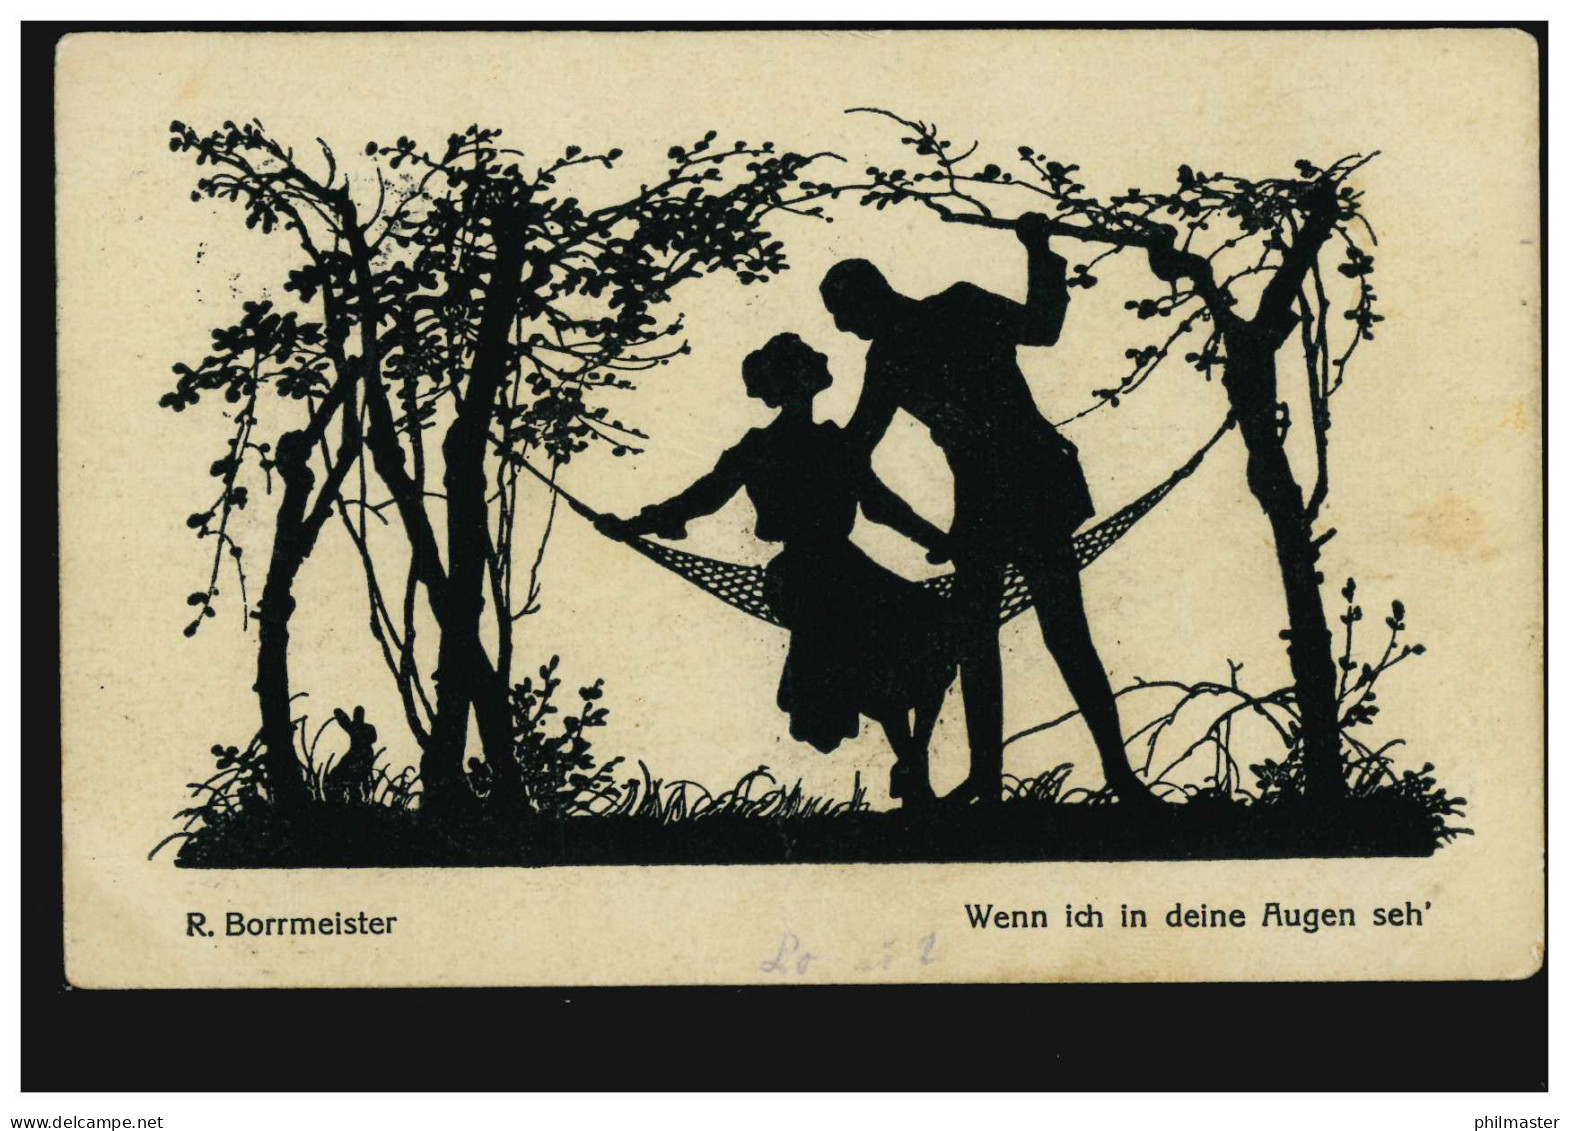 Scherenschnitt-AK R. Borrmeister Liebespaar - Wenn Ich In Deine Augen Seh', 1920 - Silhouette - Scissor-type